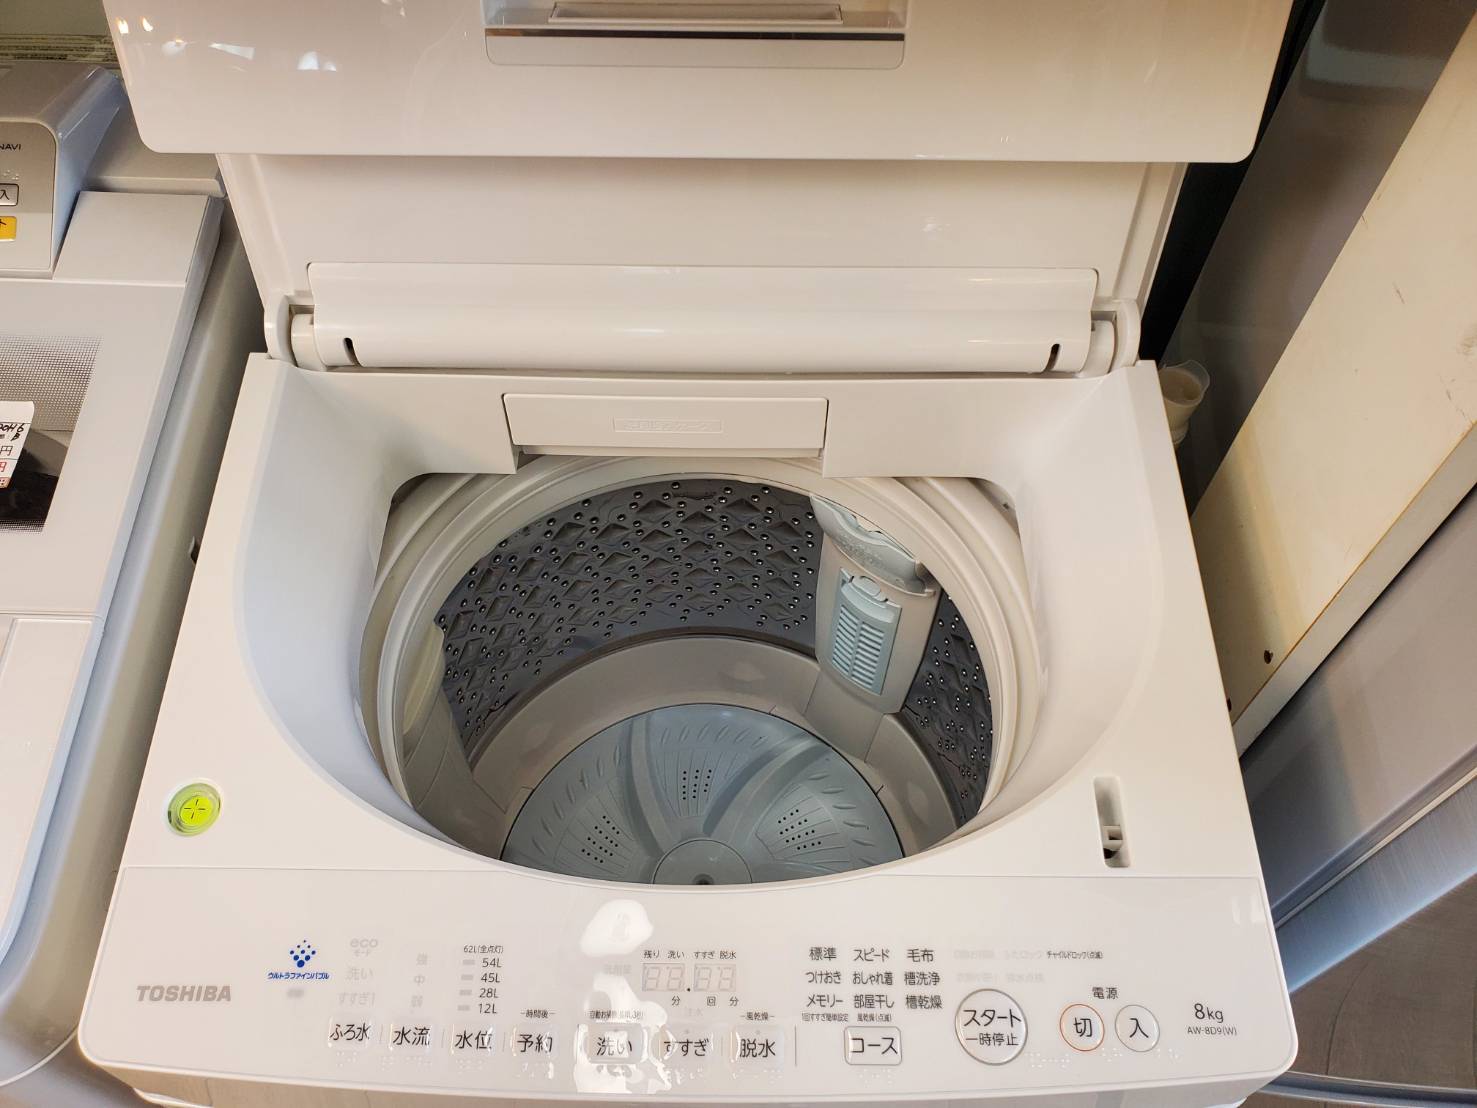 東芝 洗濯機 8kg 2019年式 AW-8D8 ホワイト - 東京都の家電